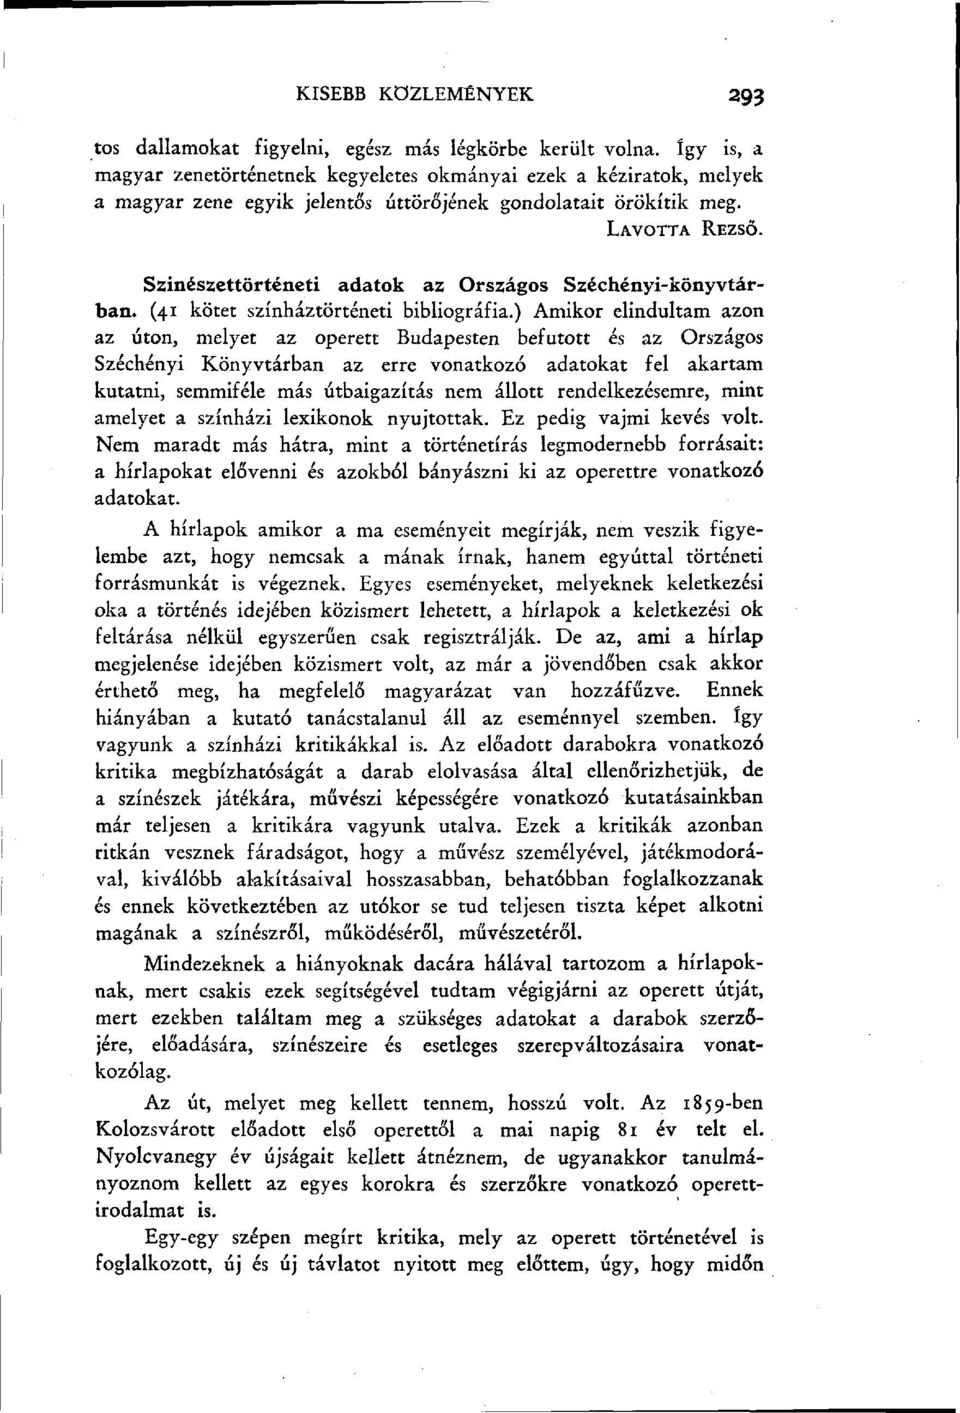 Szinészettörténeti adatok az Országos Széchényi-könyvtárban. (41 kötet színháztörténeti bibliográfia.